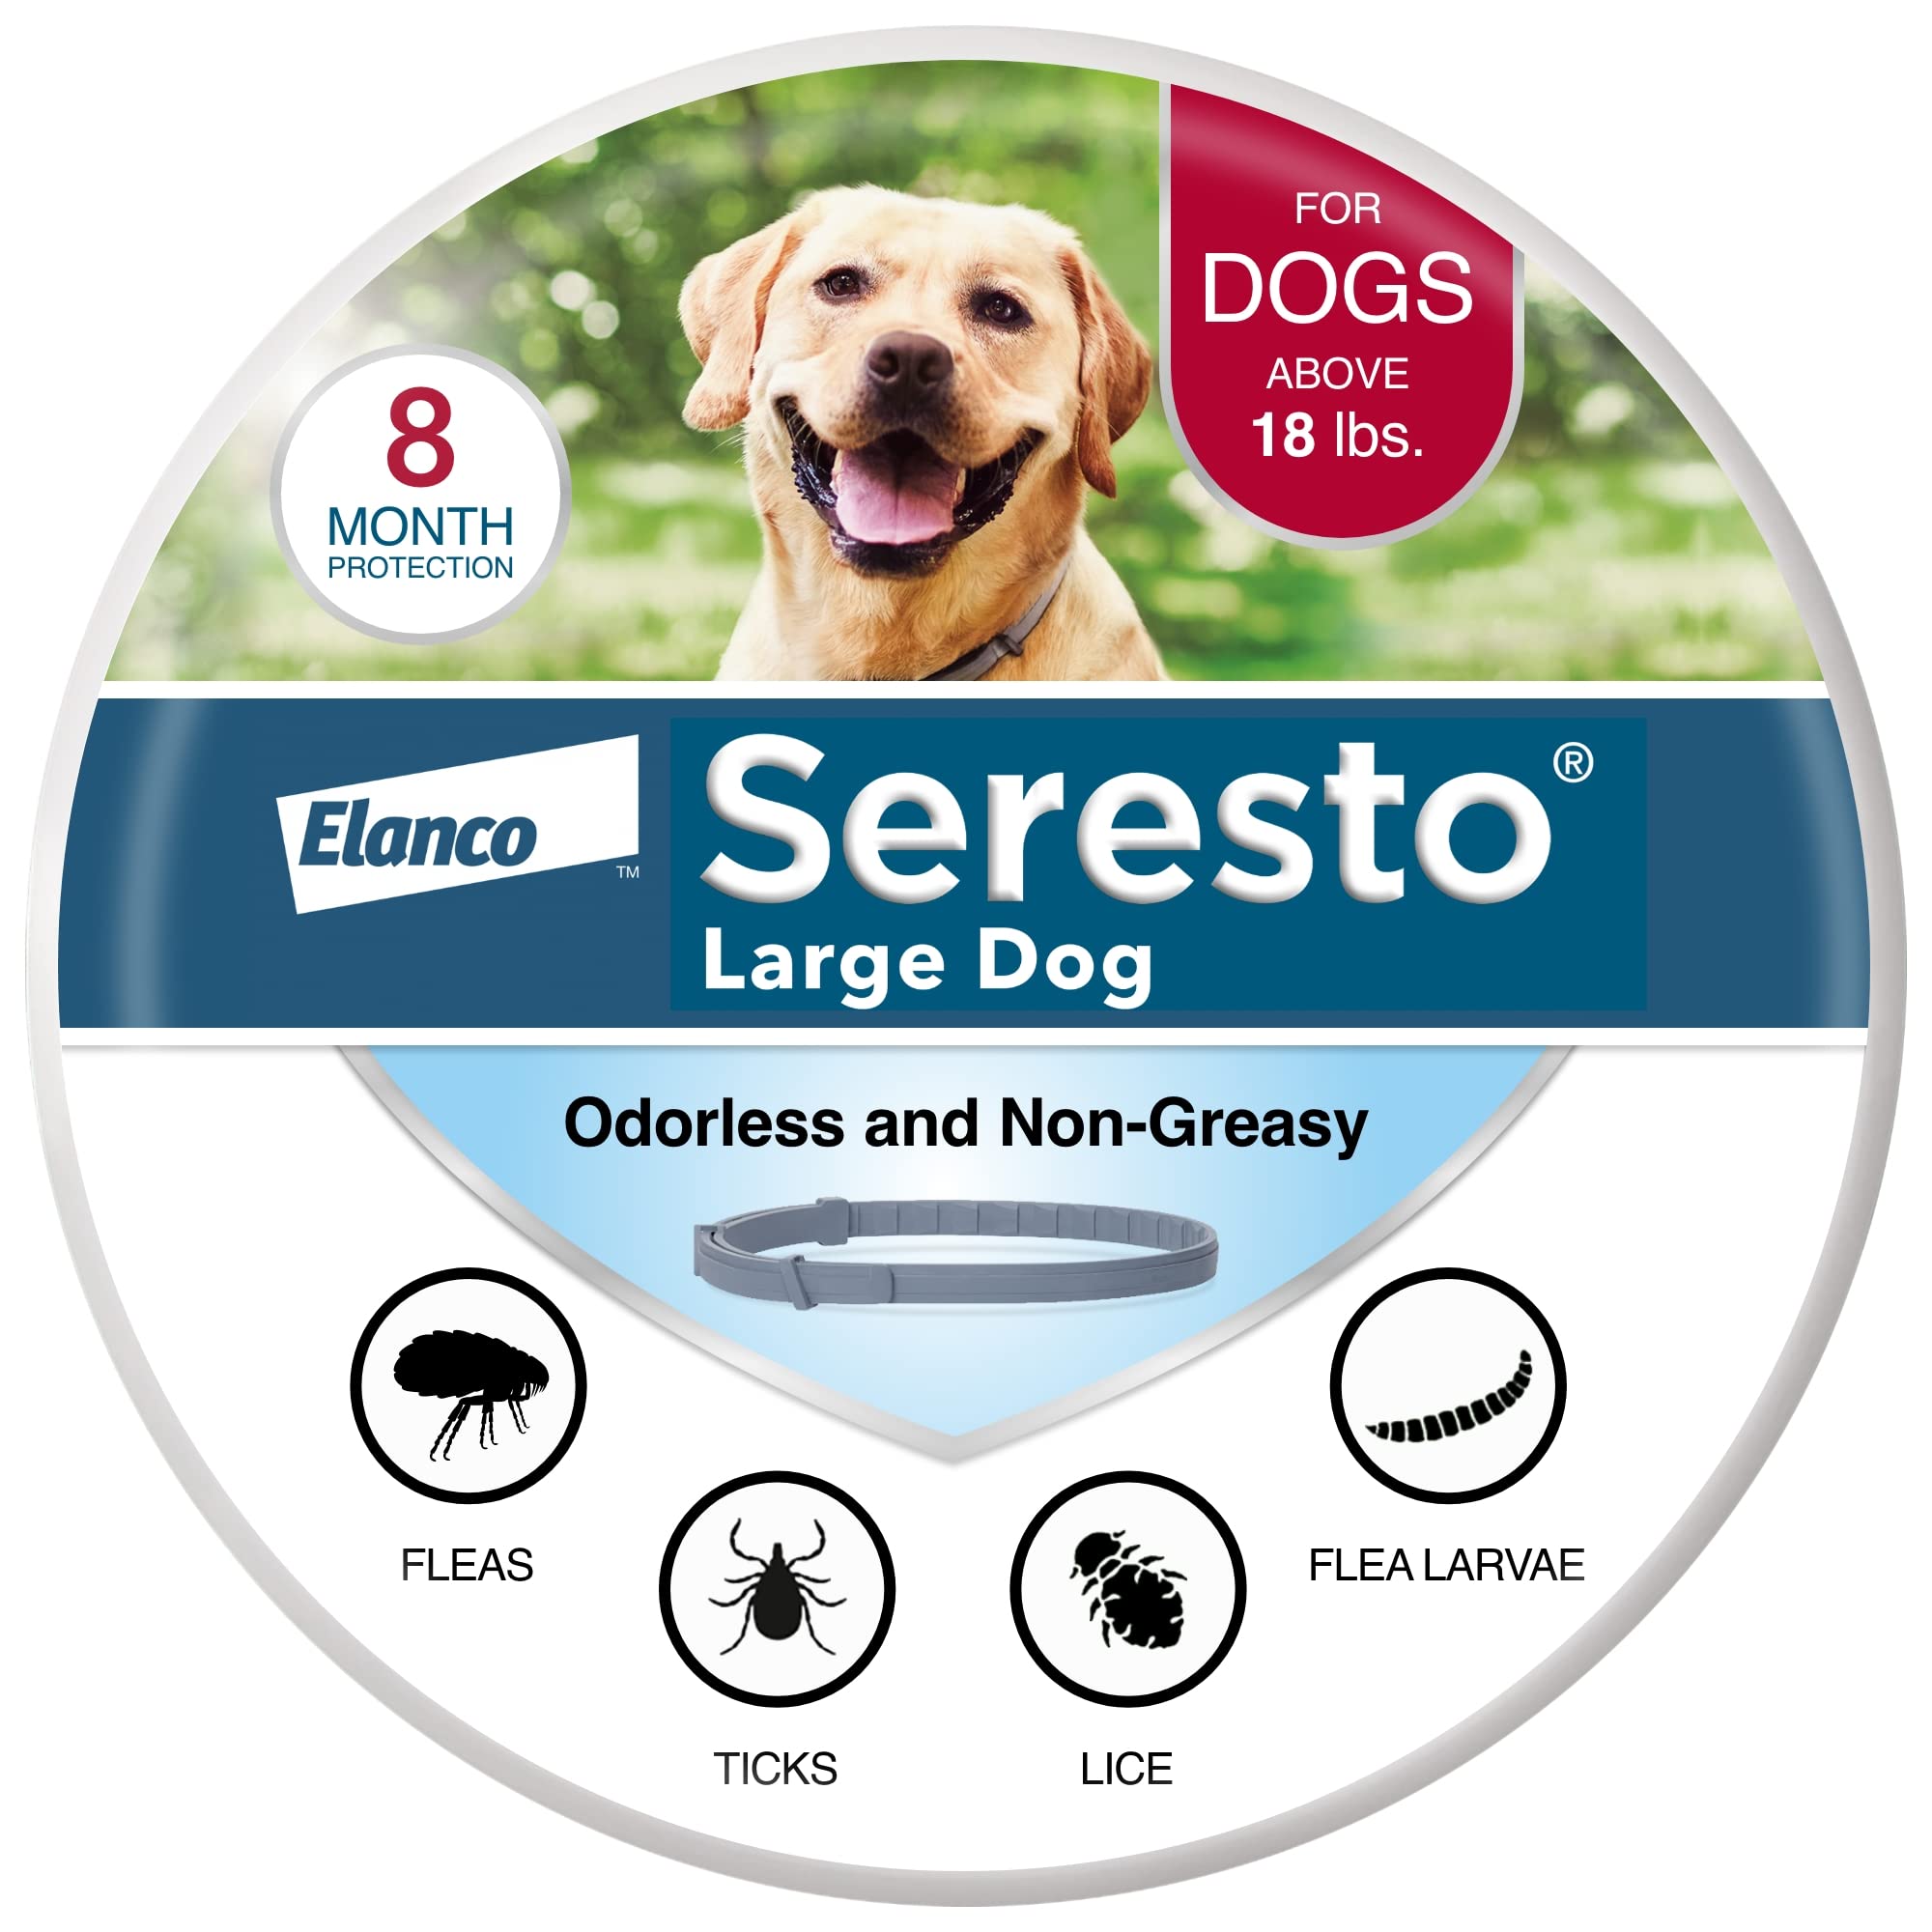 Seresto Рекомендованный ветеринаром ошейник для лечения...